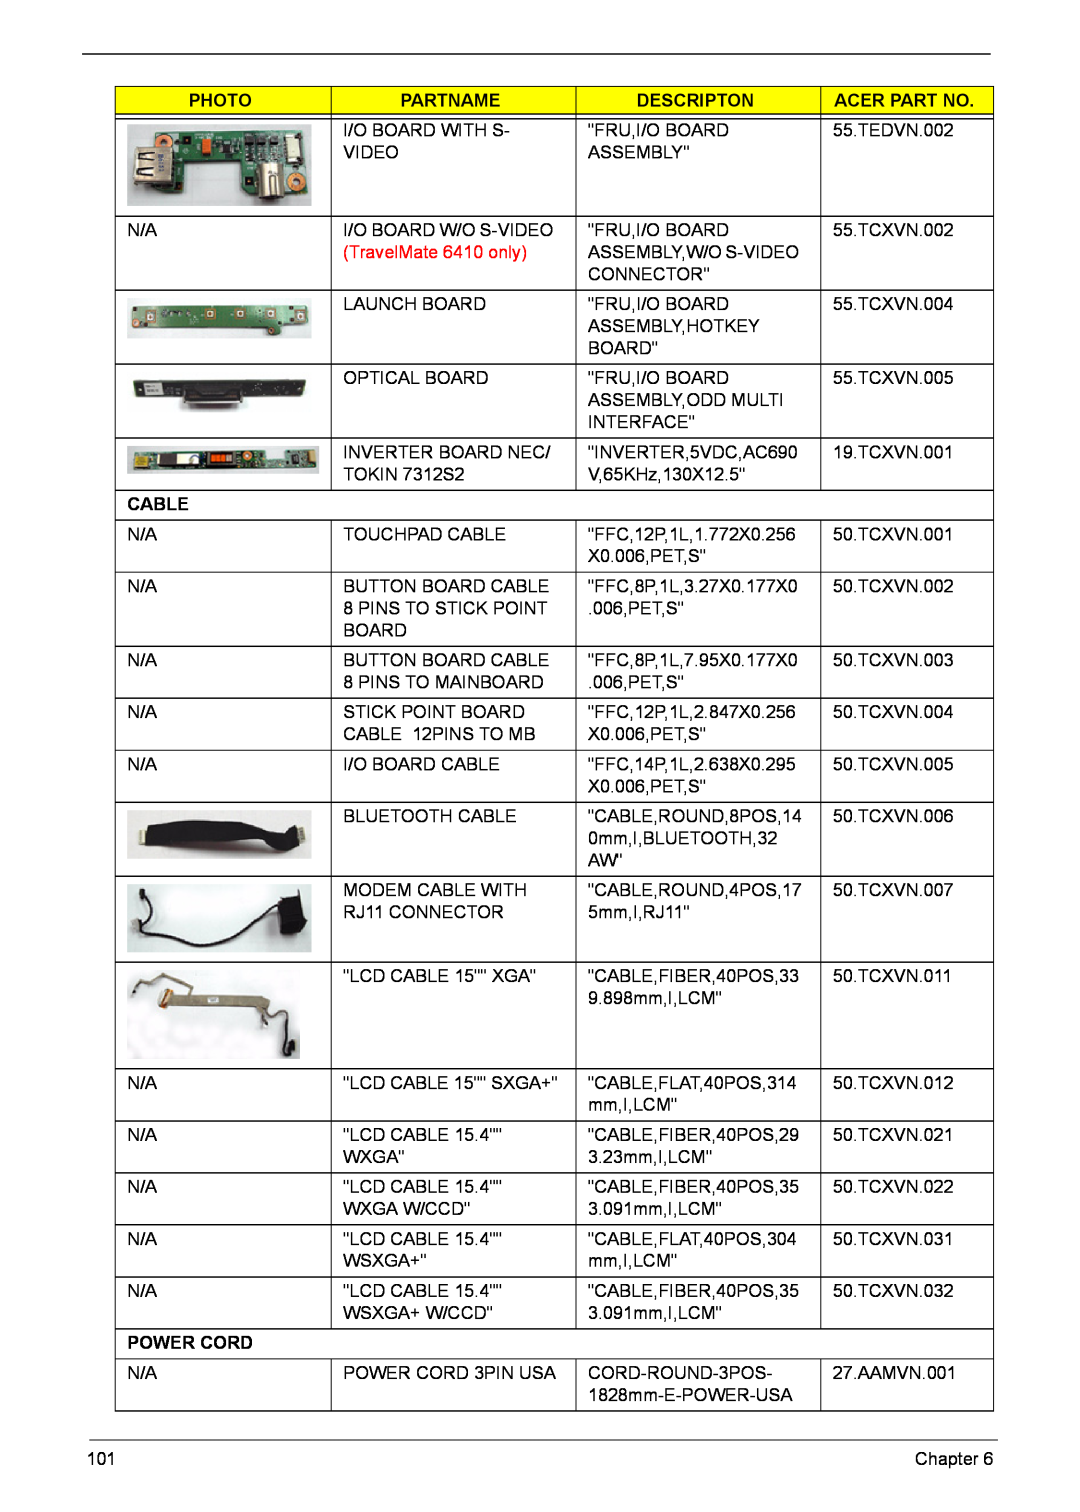 Acer 6460, 6410 manual Cable, Power Cord, Photo, Partname, Descripton, Acer Part No 